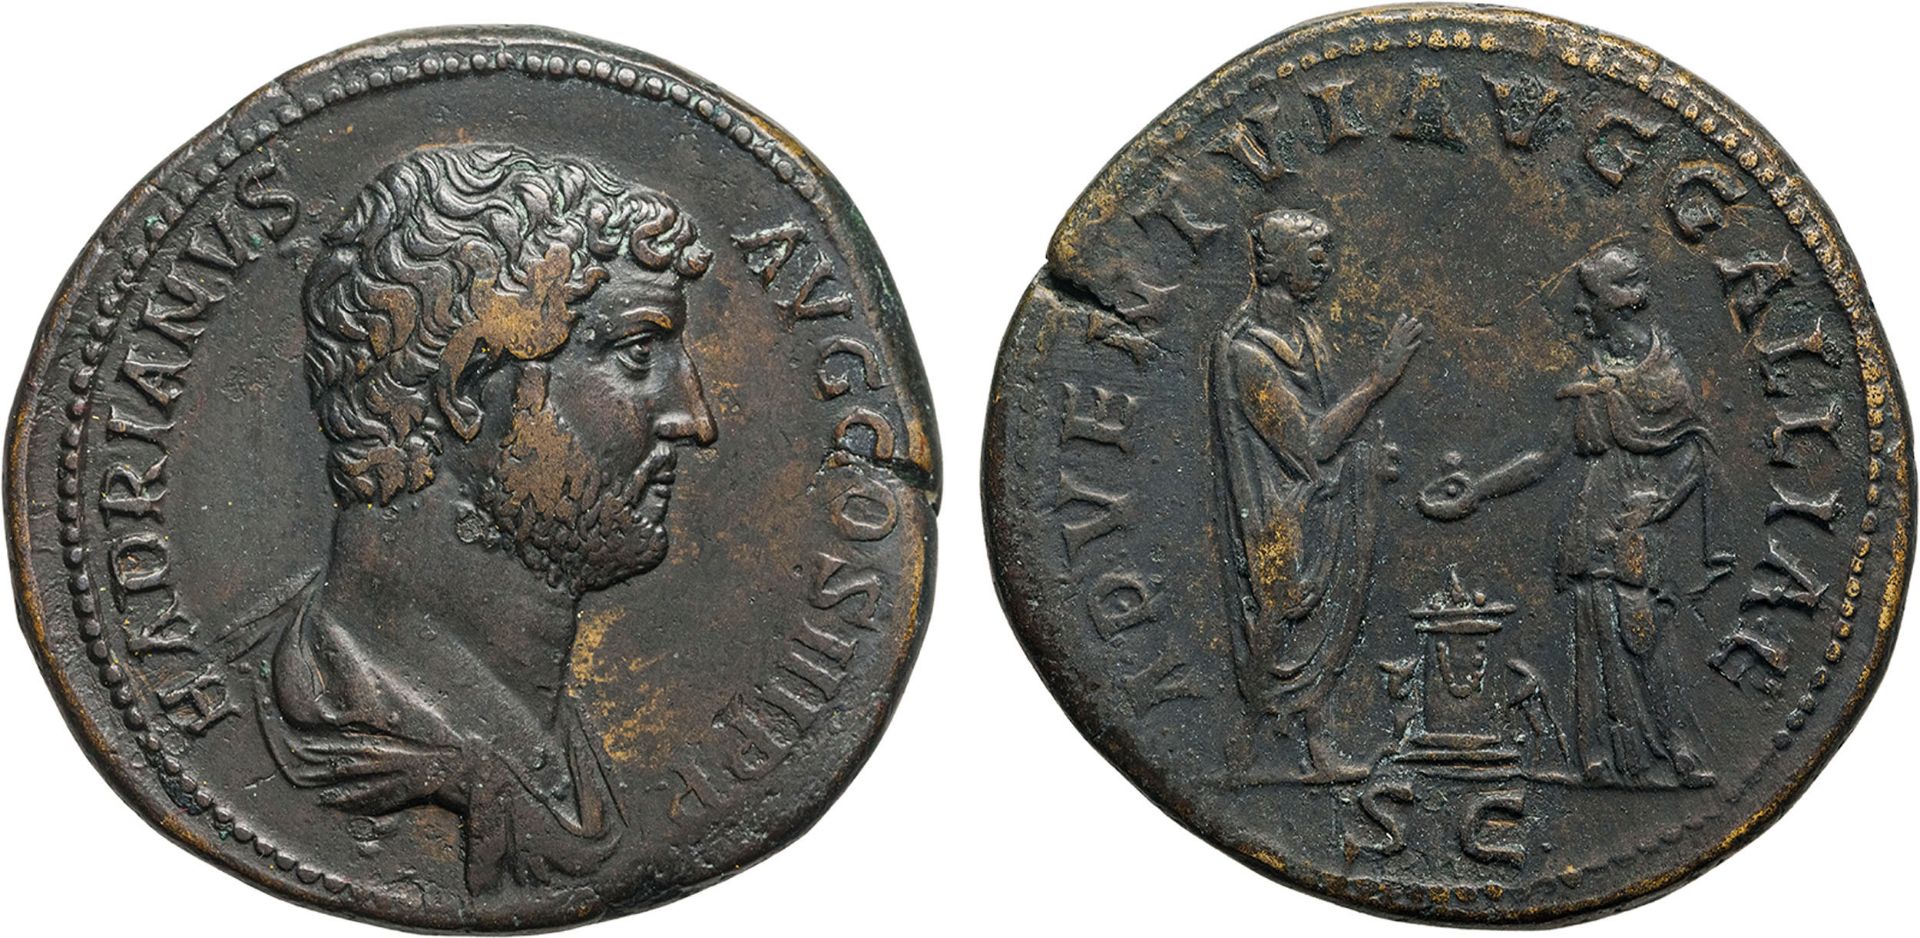 MONETE ROMANE IMPERIALI. ADRIANO (117-138). SESTERZIO